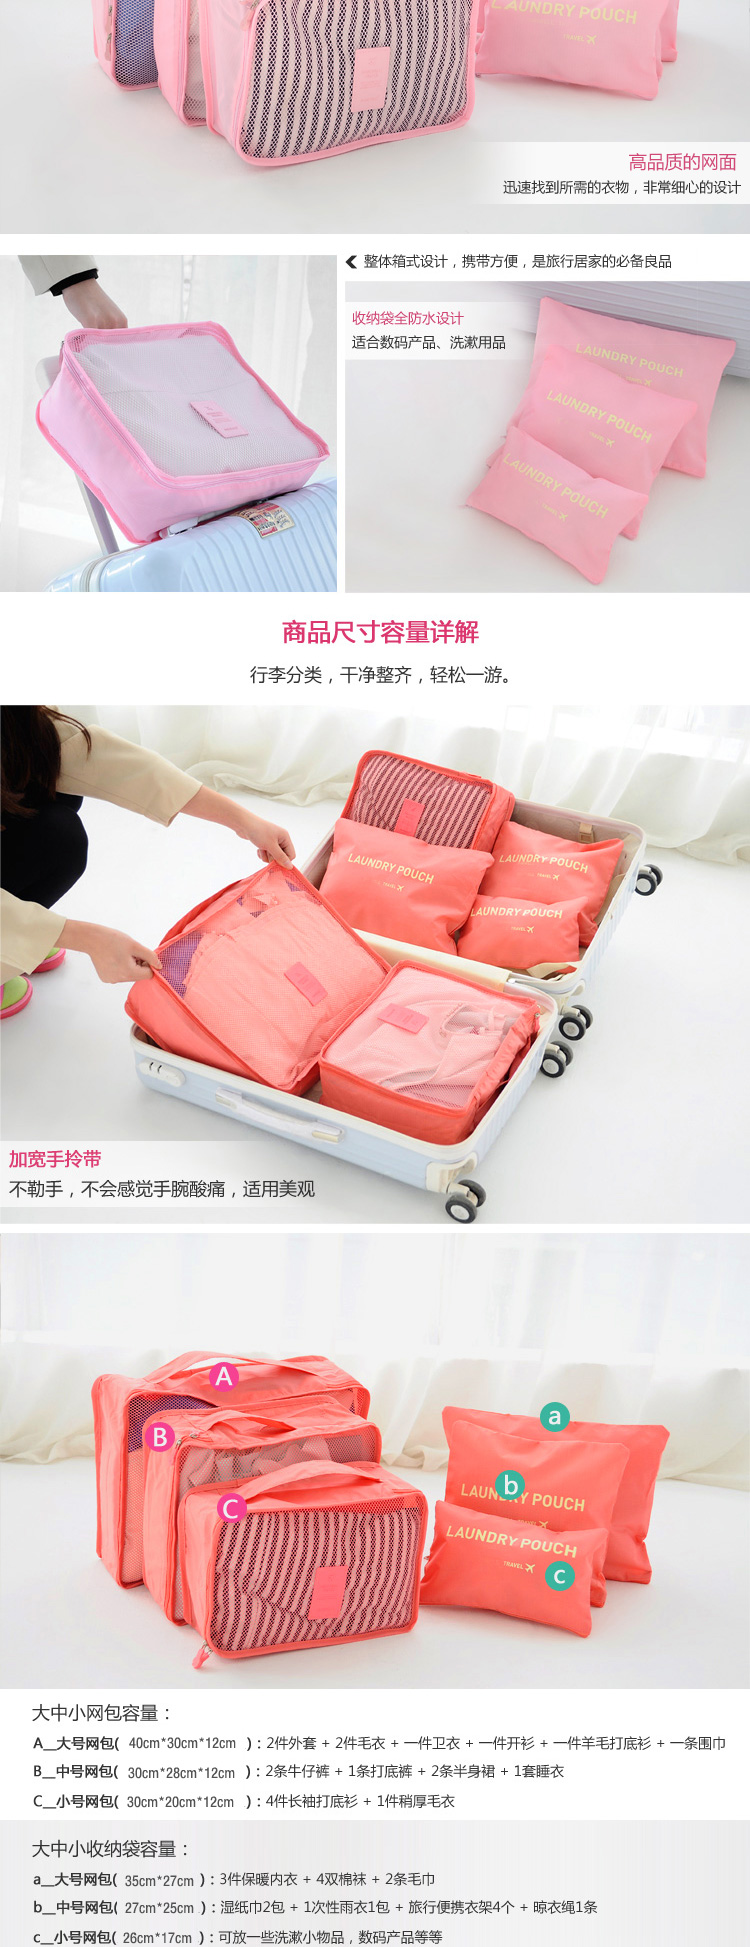 Suitcase suitcase, luggage bag, bag, clothing, clothing, clothing, underwear, underwear, and 6 pieces4